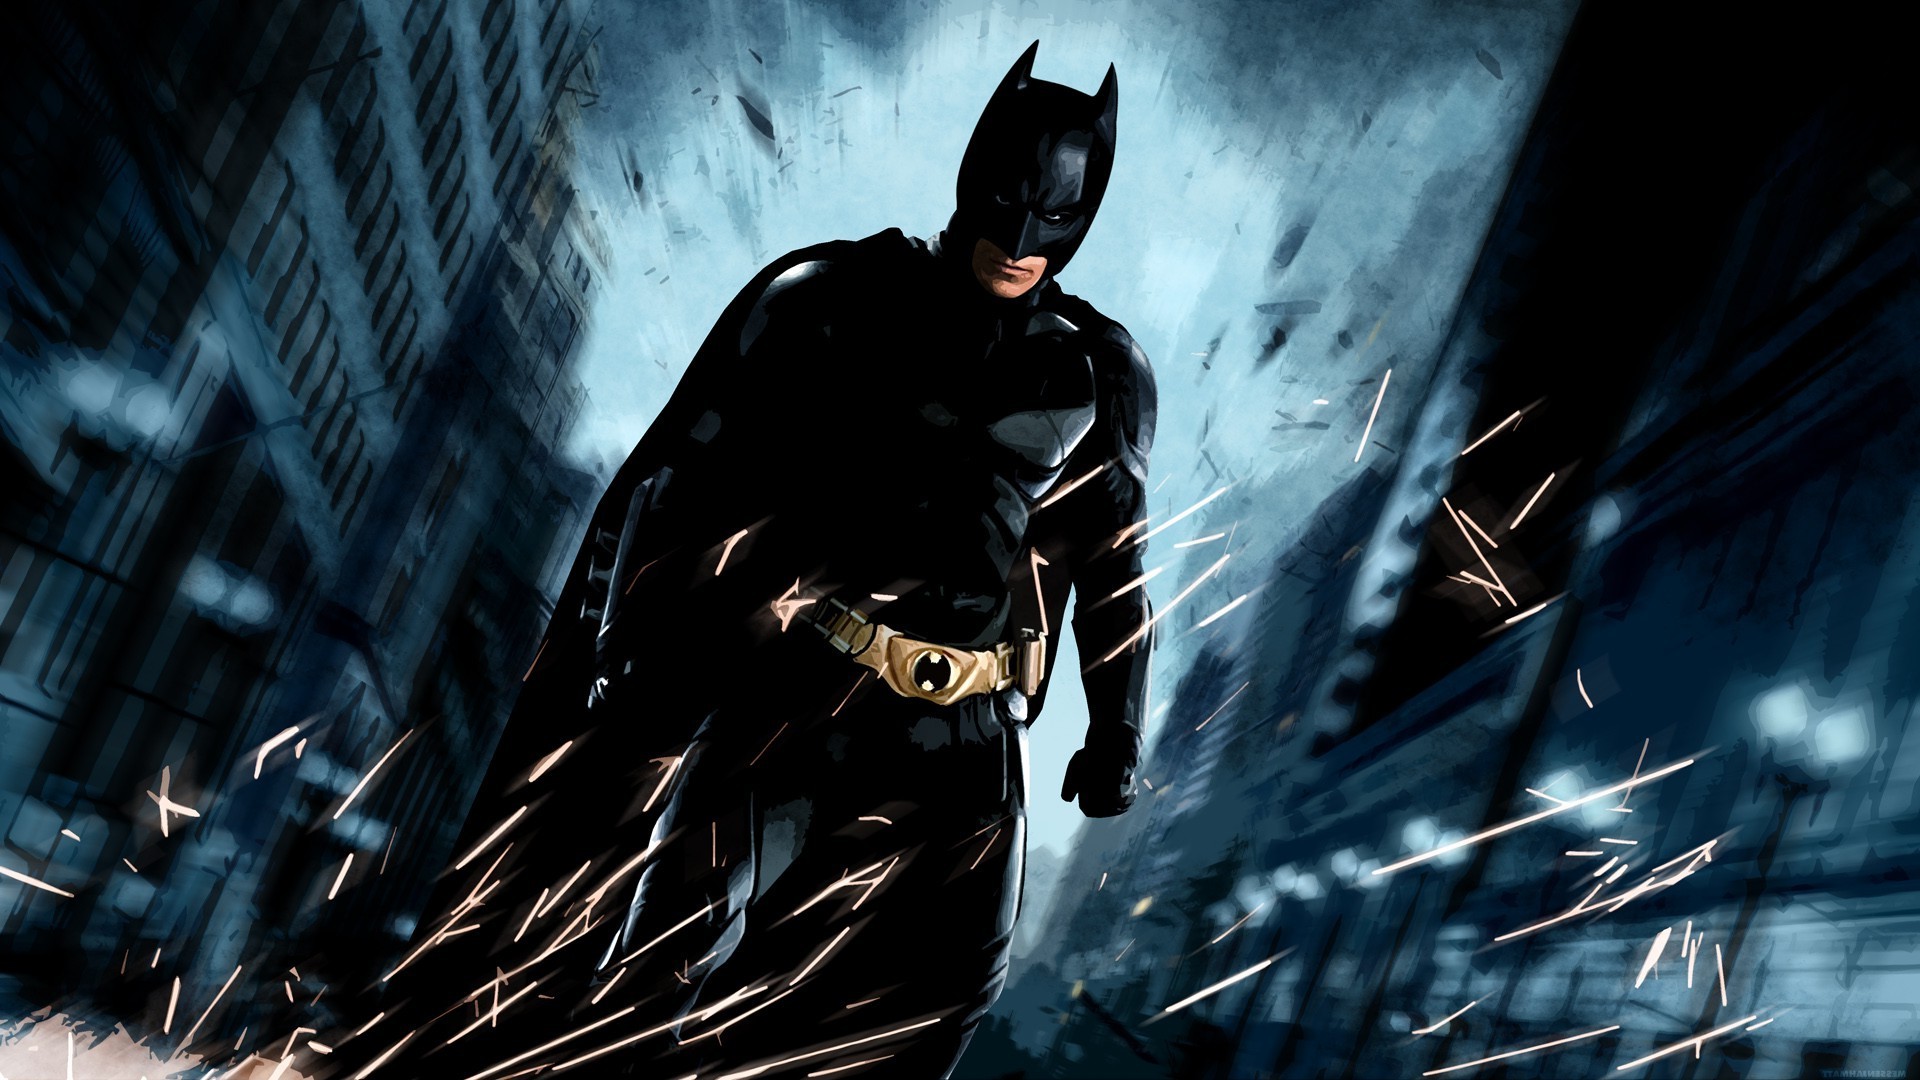 movies, The Dark Knight Rises, Batman, MessenjahMatt Wallpapers HD